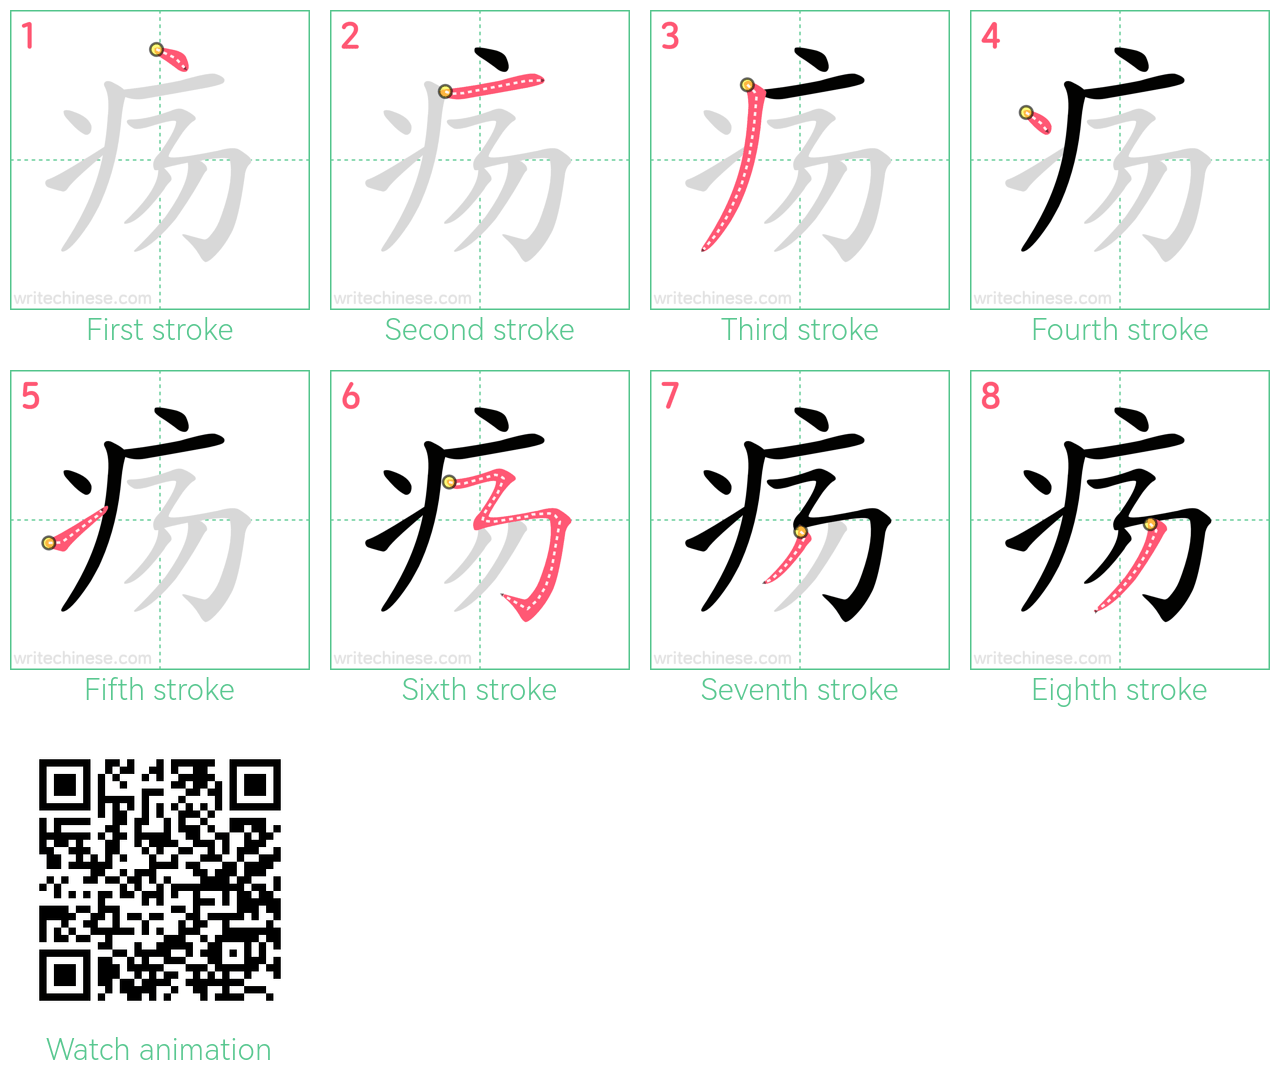 疡 step-by-step stroke order diagrams